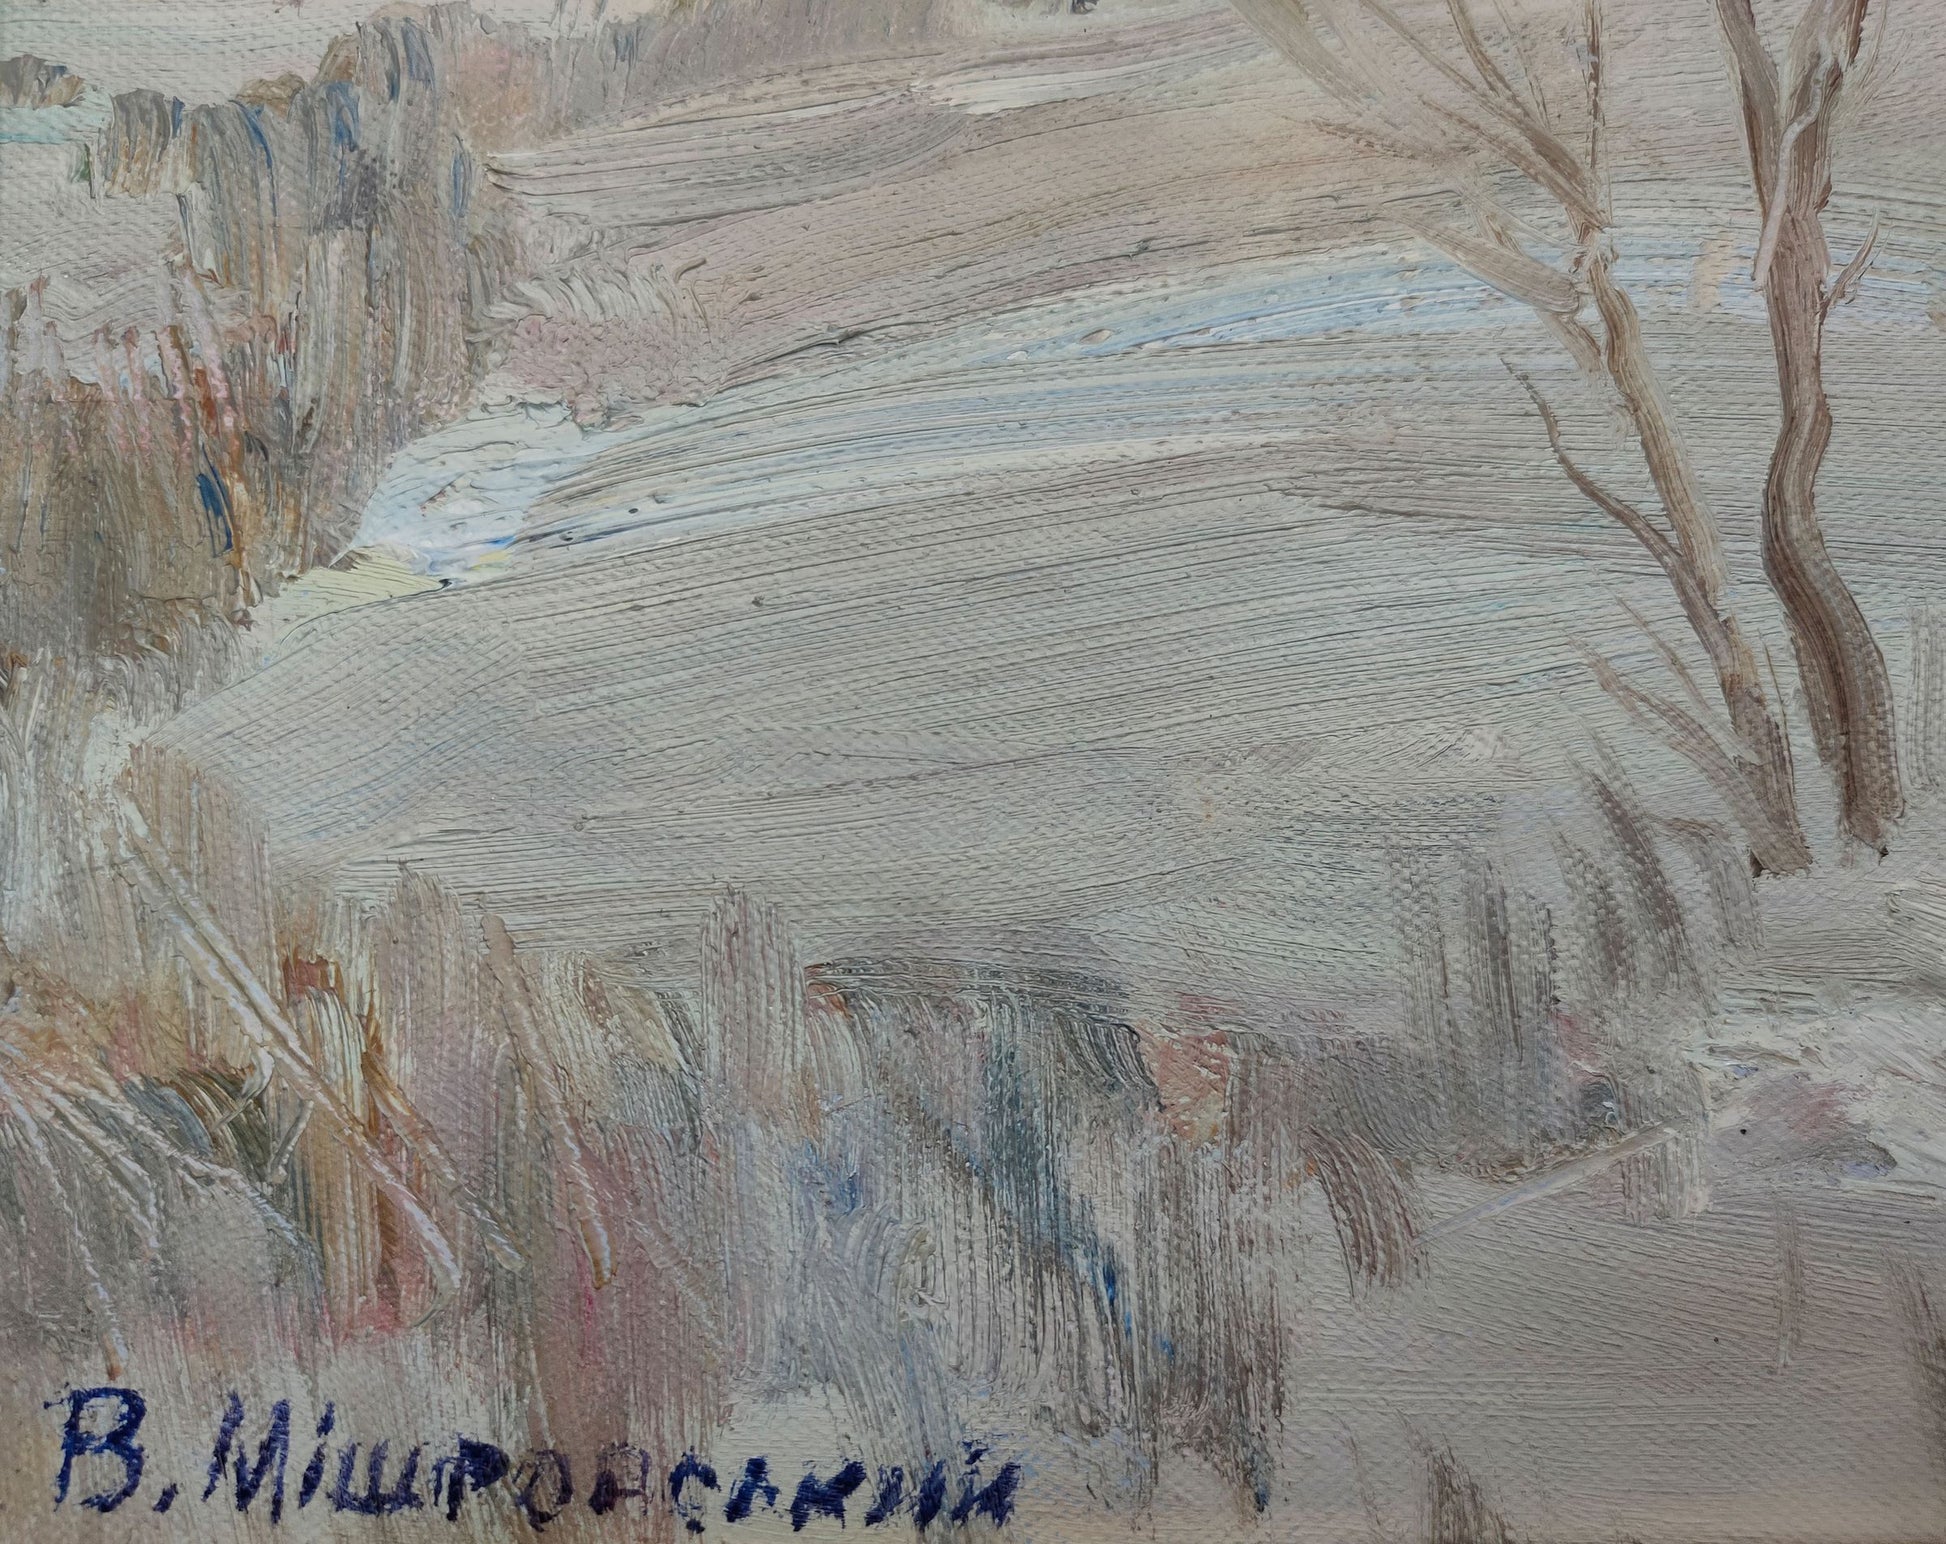 V. V. Mishurovsky's oil depiction of a winter road